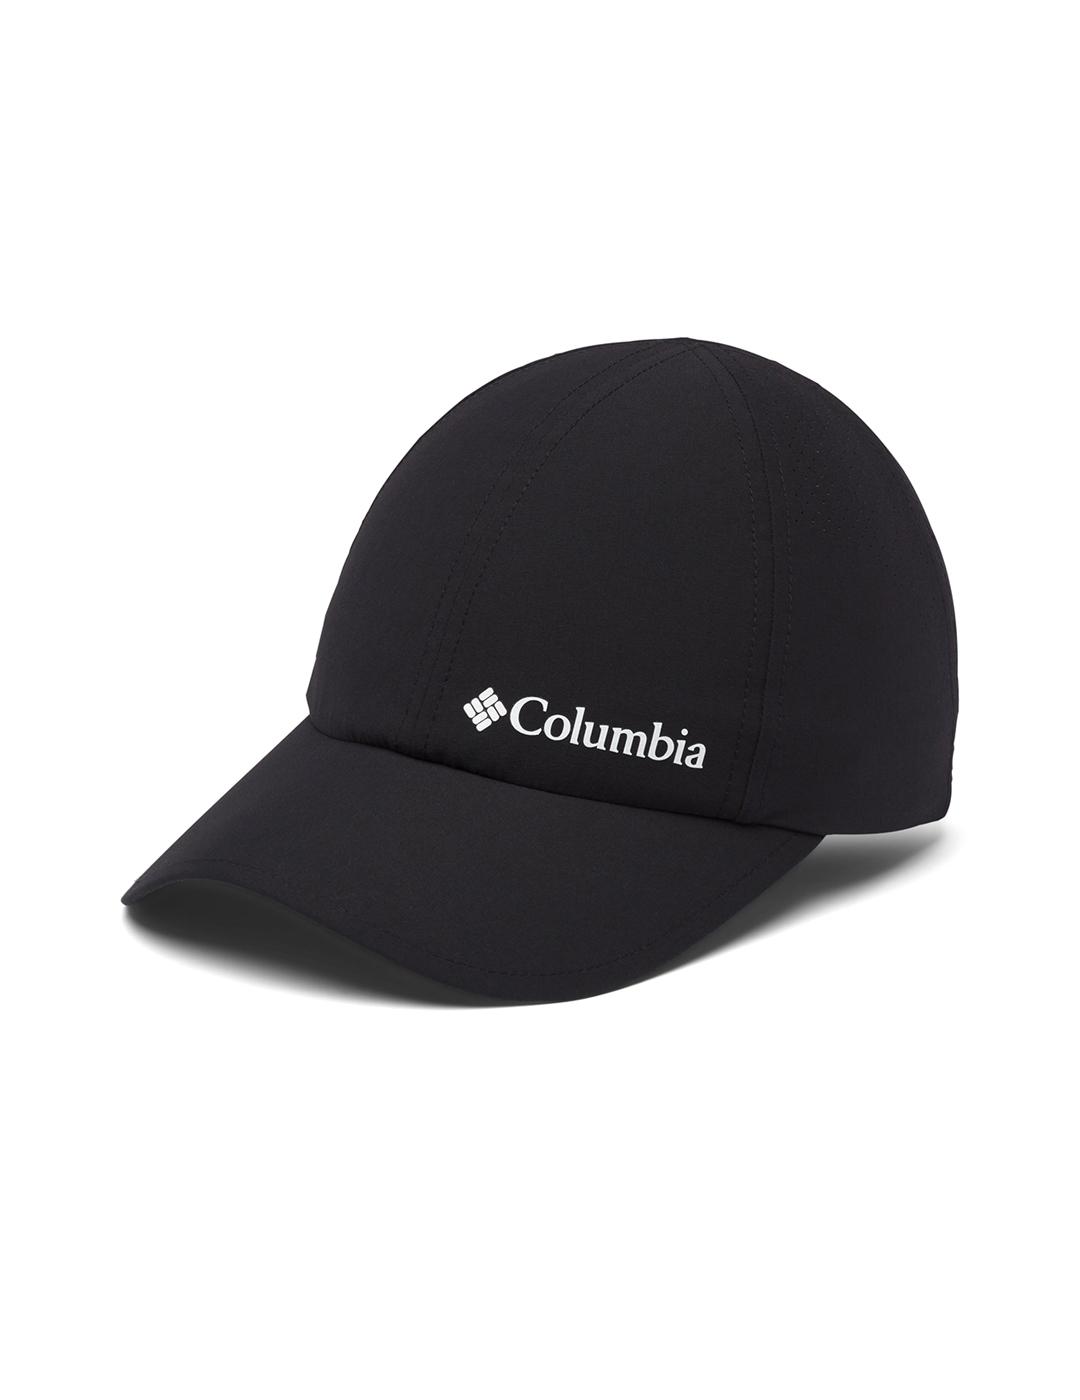 Las mejores ofertas en Sombreros Columbia talla S negra para hombres